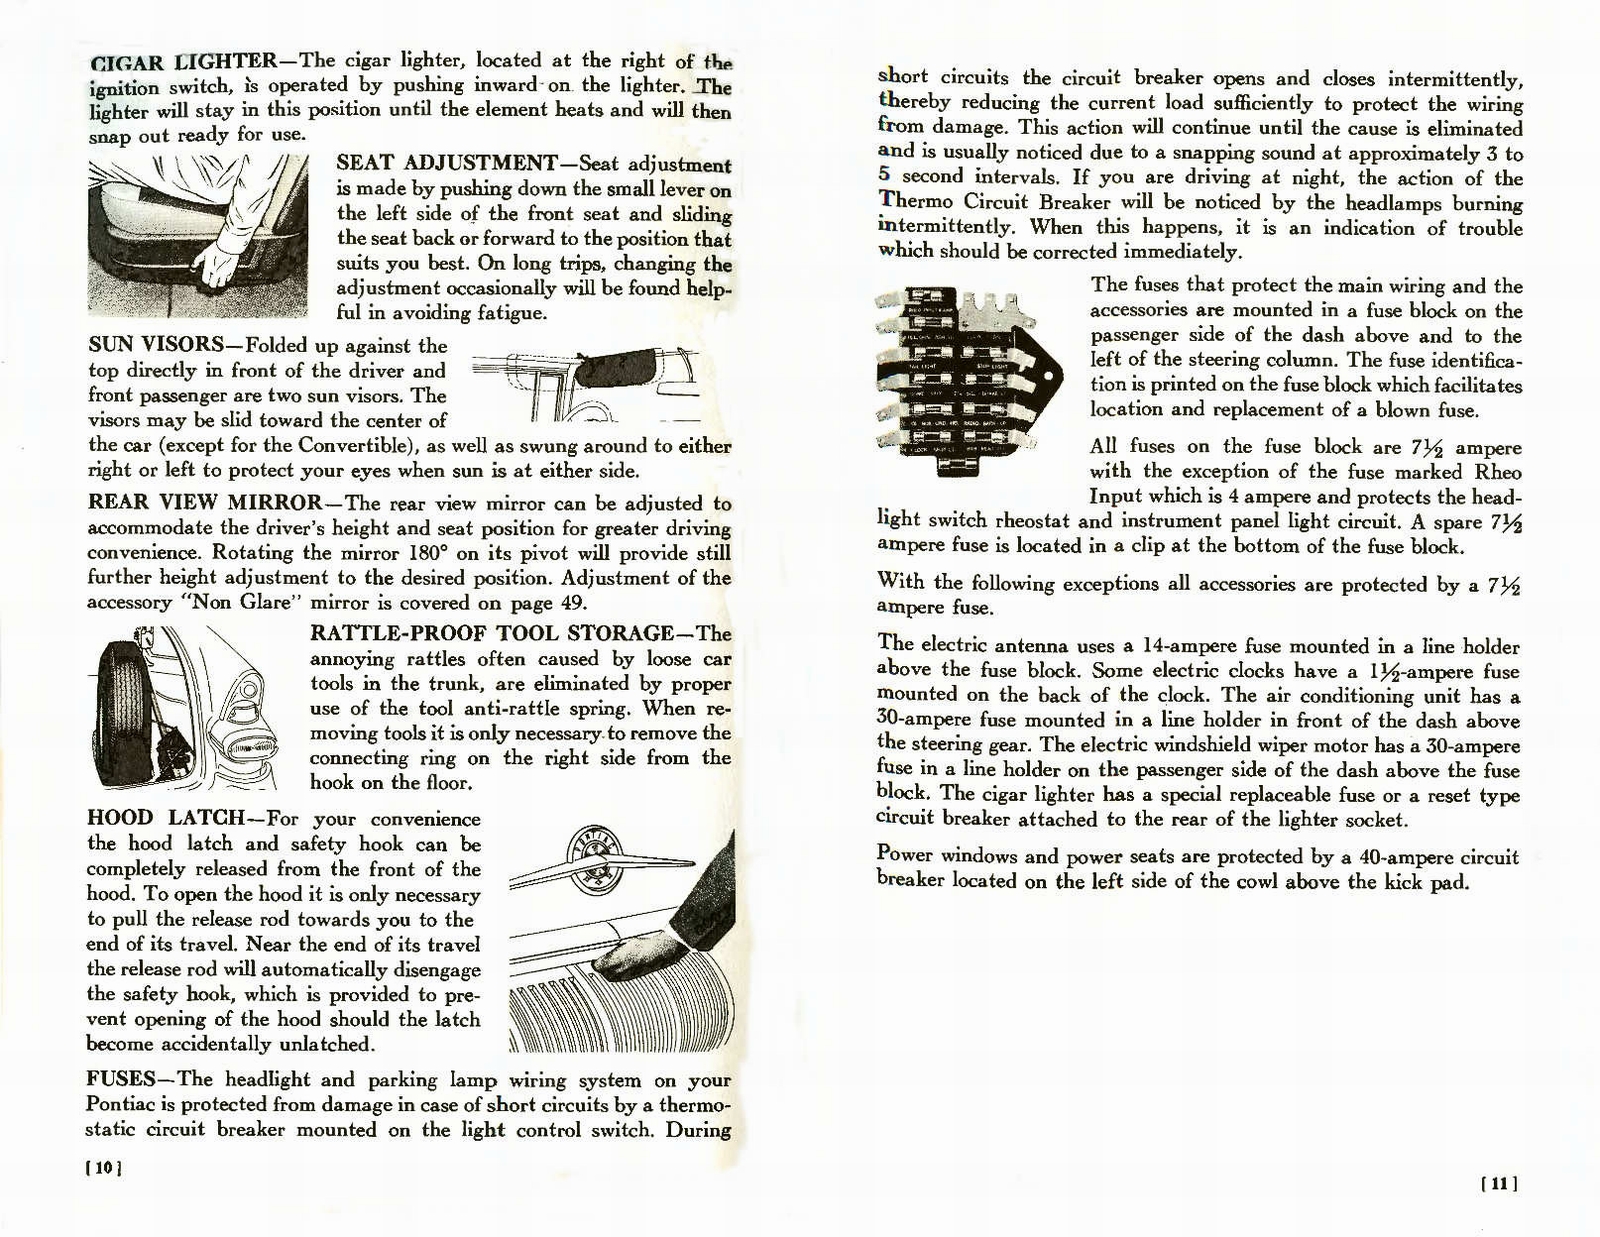 n_1957 Pontiac Owners Guide-10-11.jpg